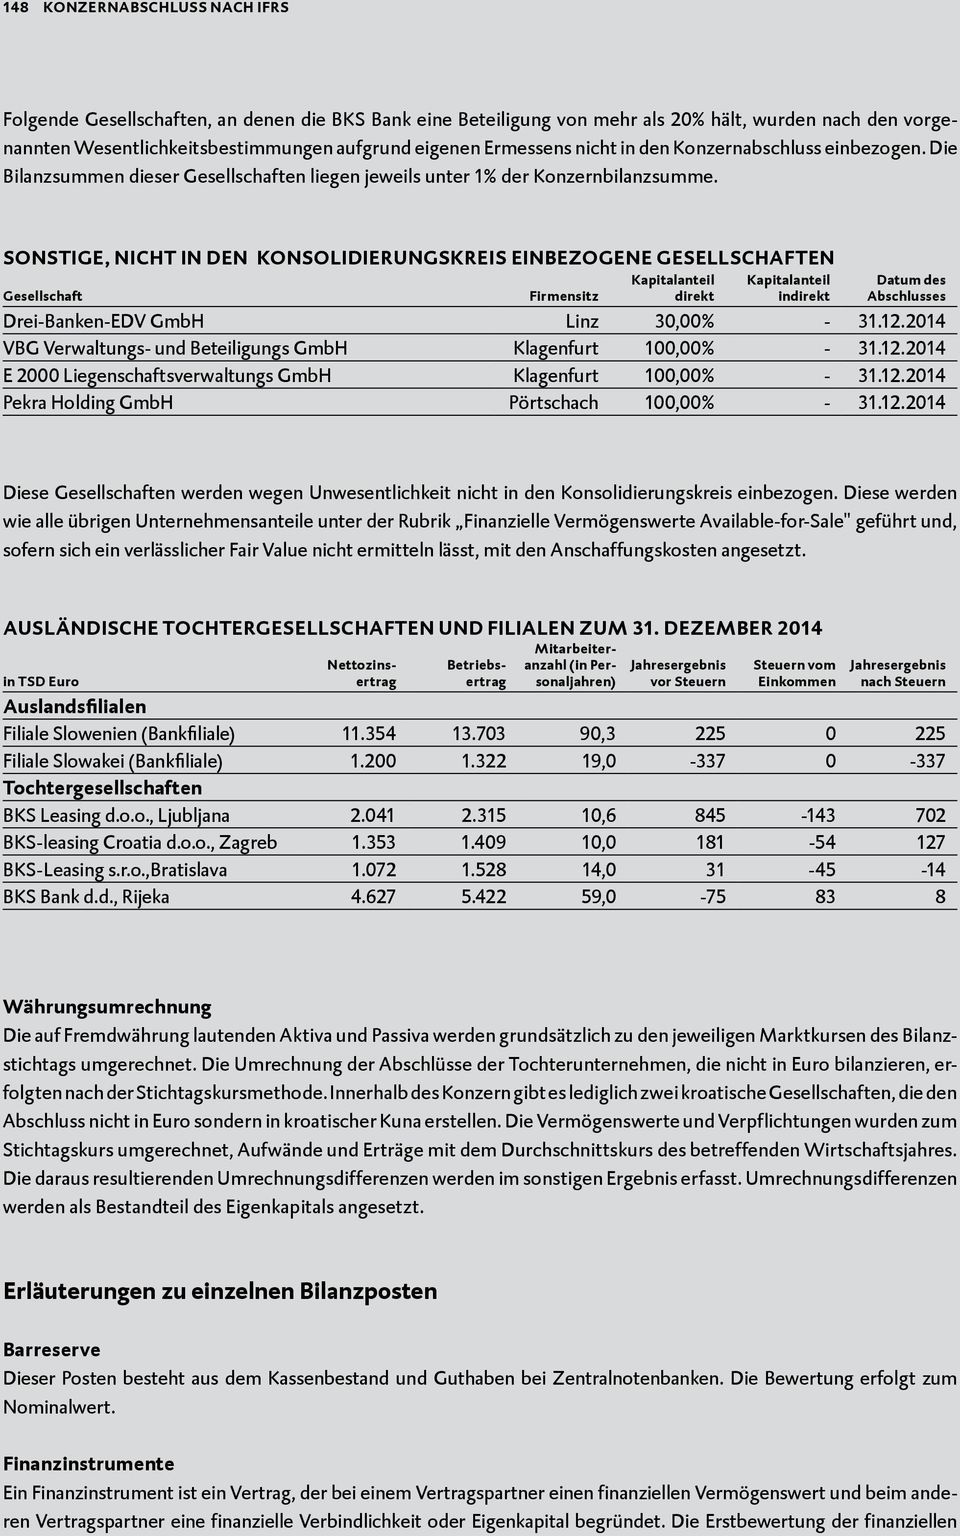 Sonstige, nicht in den Konsolidierungskreis einbezogene Gesellschaften Gesellschaft Firmensitz Kapitalanteil direkt Kapitalanteil indirekt Datum des Abschlusses Drei-Banken-EDV GmbH Linz 30,00% - 31.